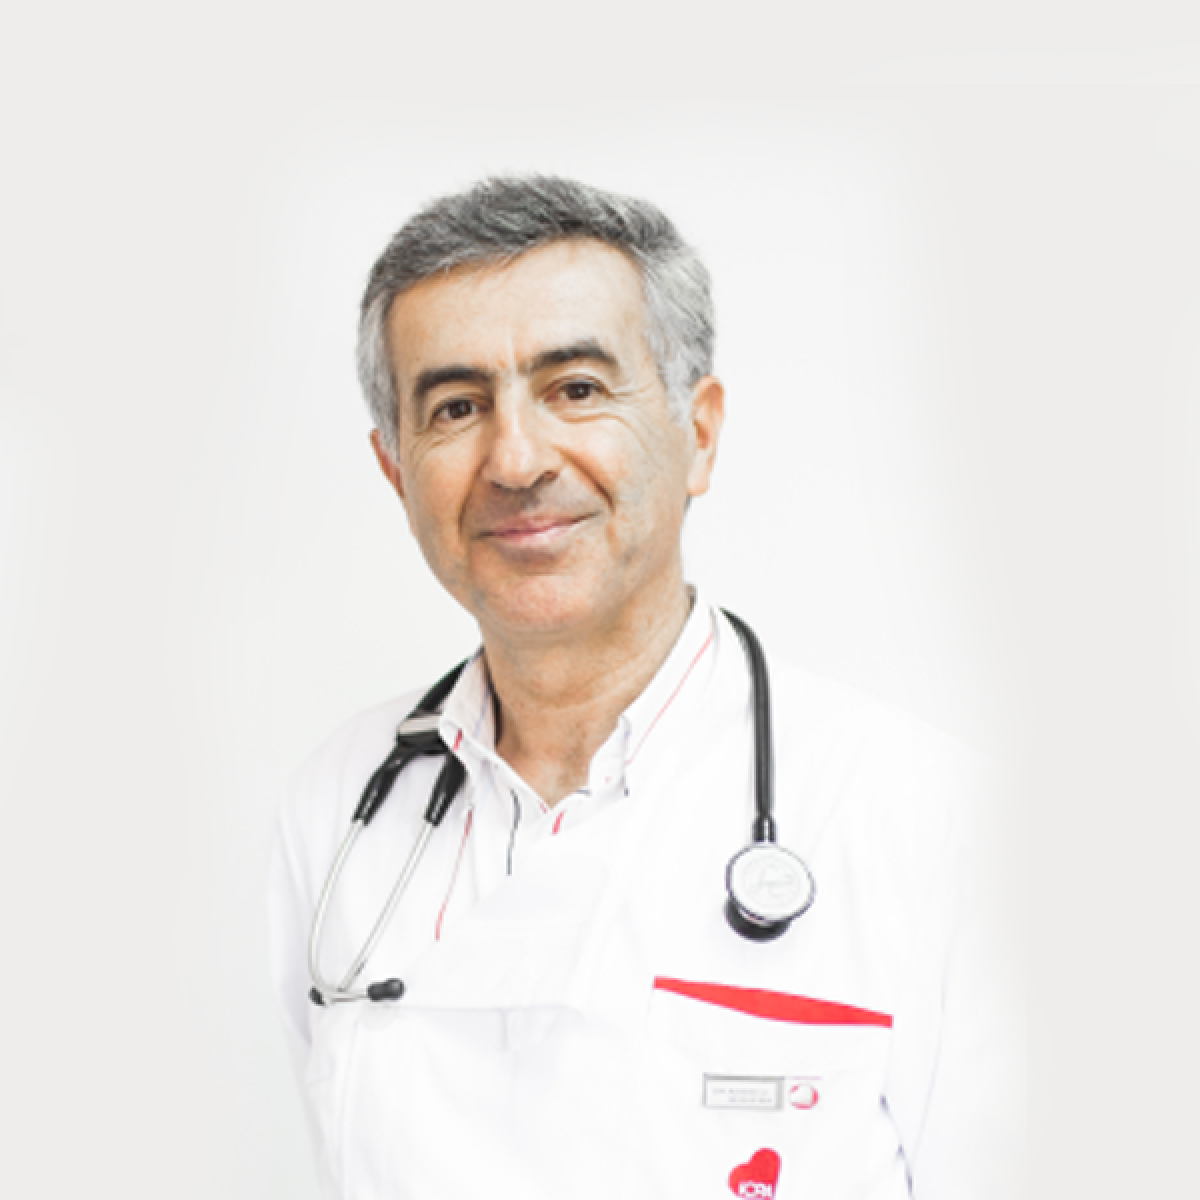 Dr. Américo Sequeira